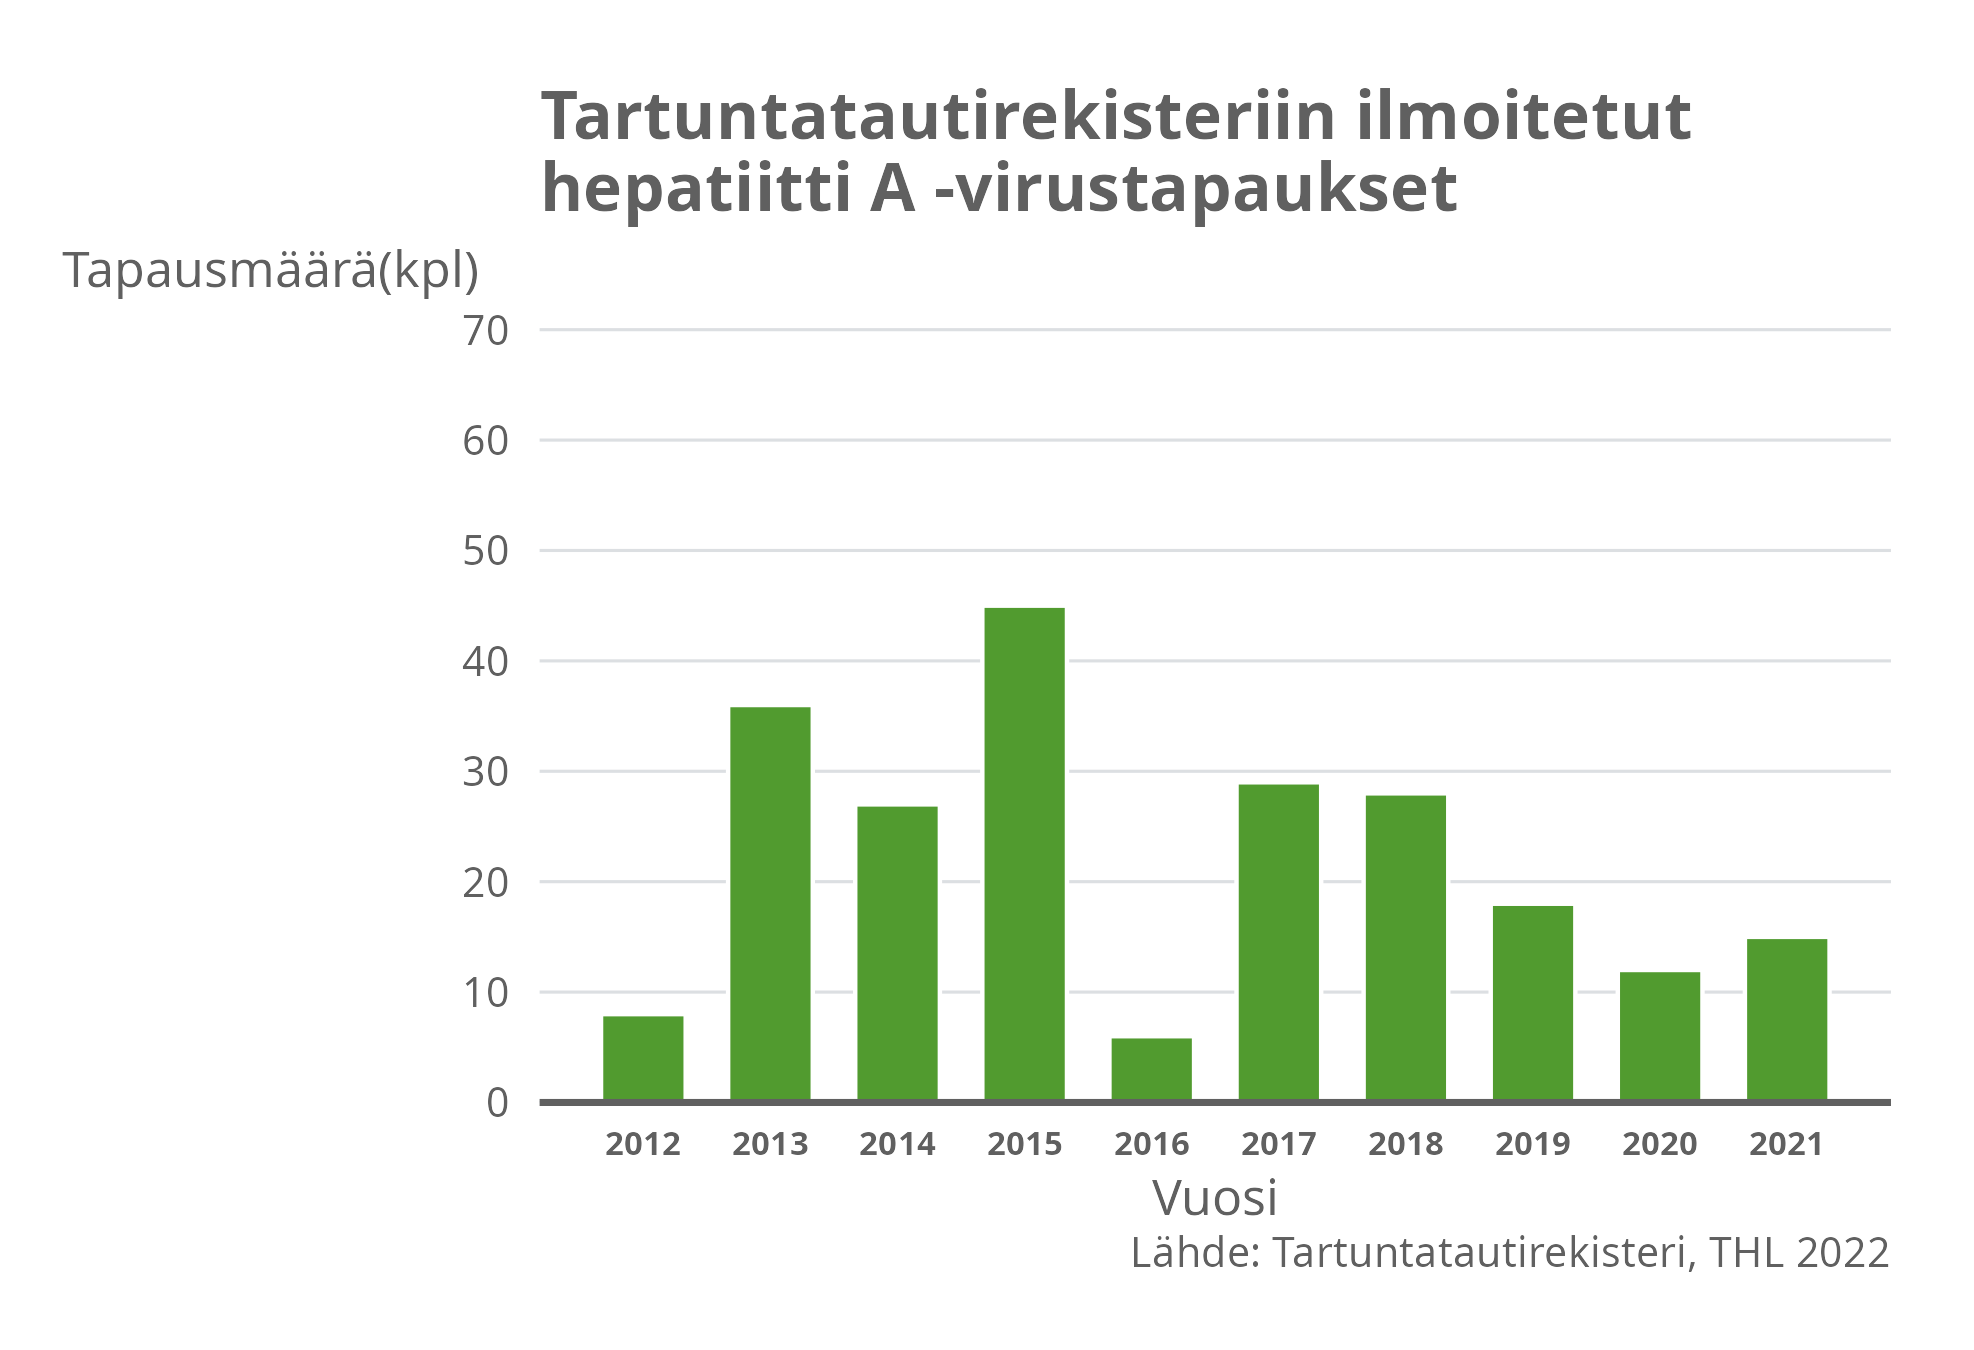 Tartuntatautirekisteriin ilmoitetut hepatiitti A -virustapaukset.